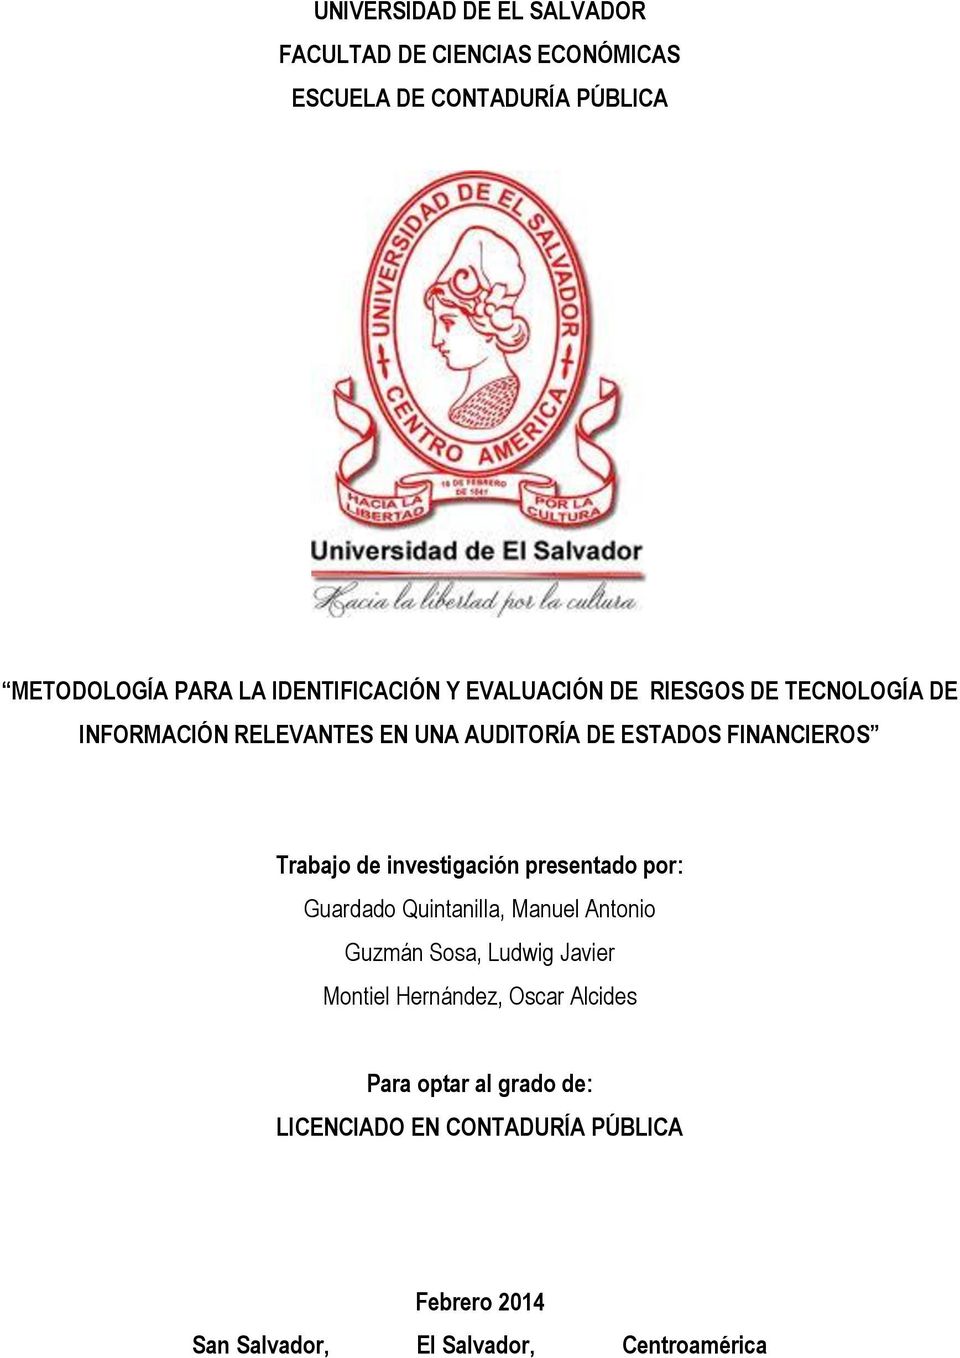 Trabajo de investigación presentado por: Guardado Quintanilla, Manuel Antonio Guzmán Sosa, Ludwig Javier Montiel